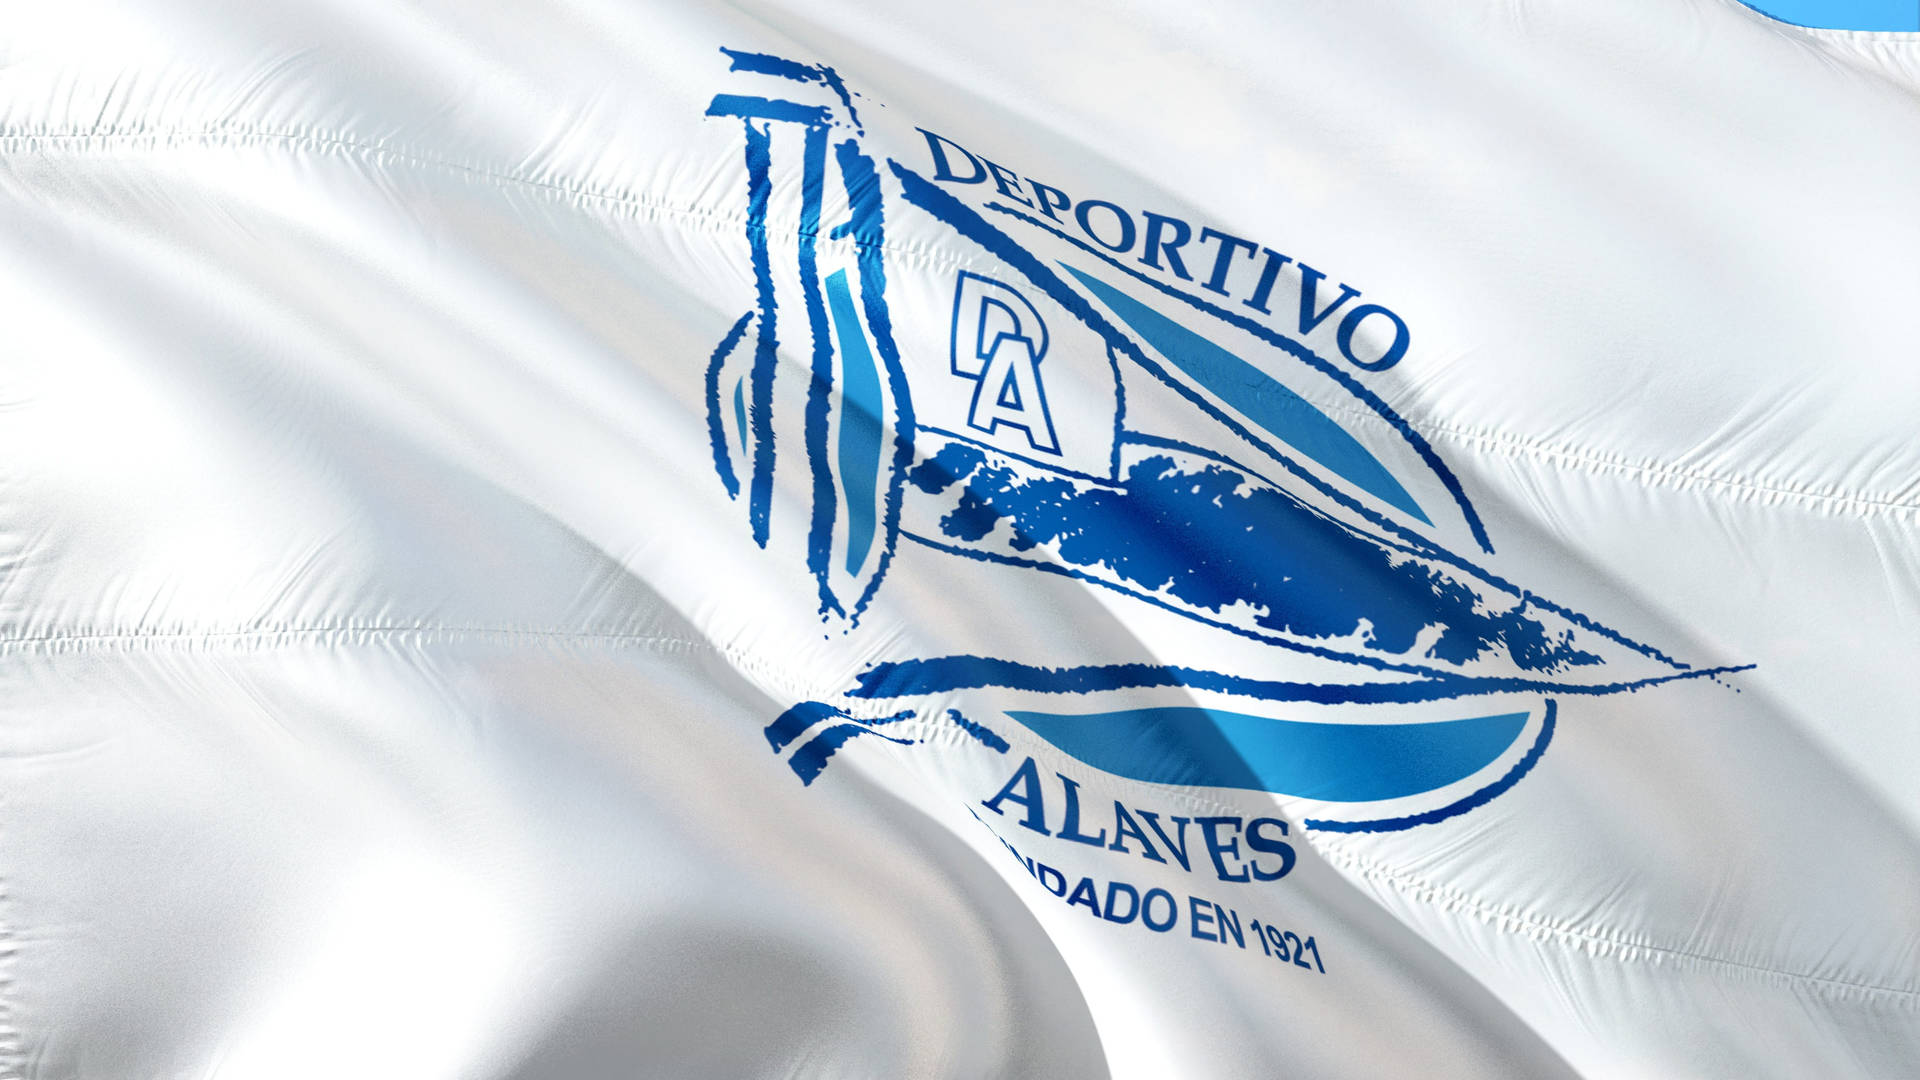 La Liga Deportivo Alavés Flag